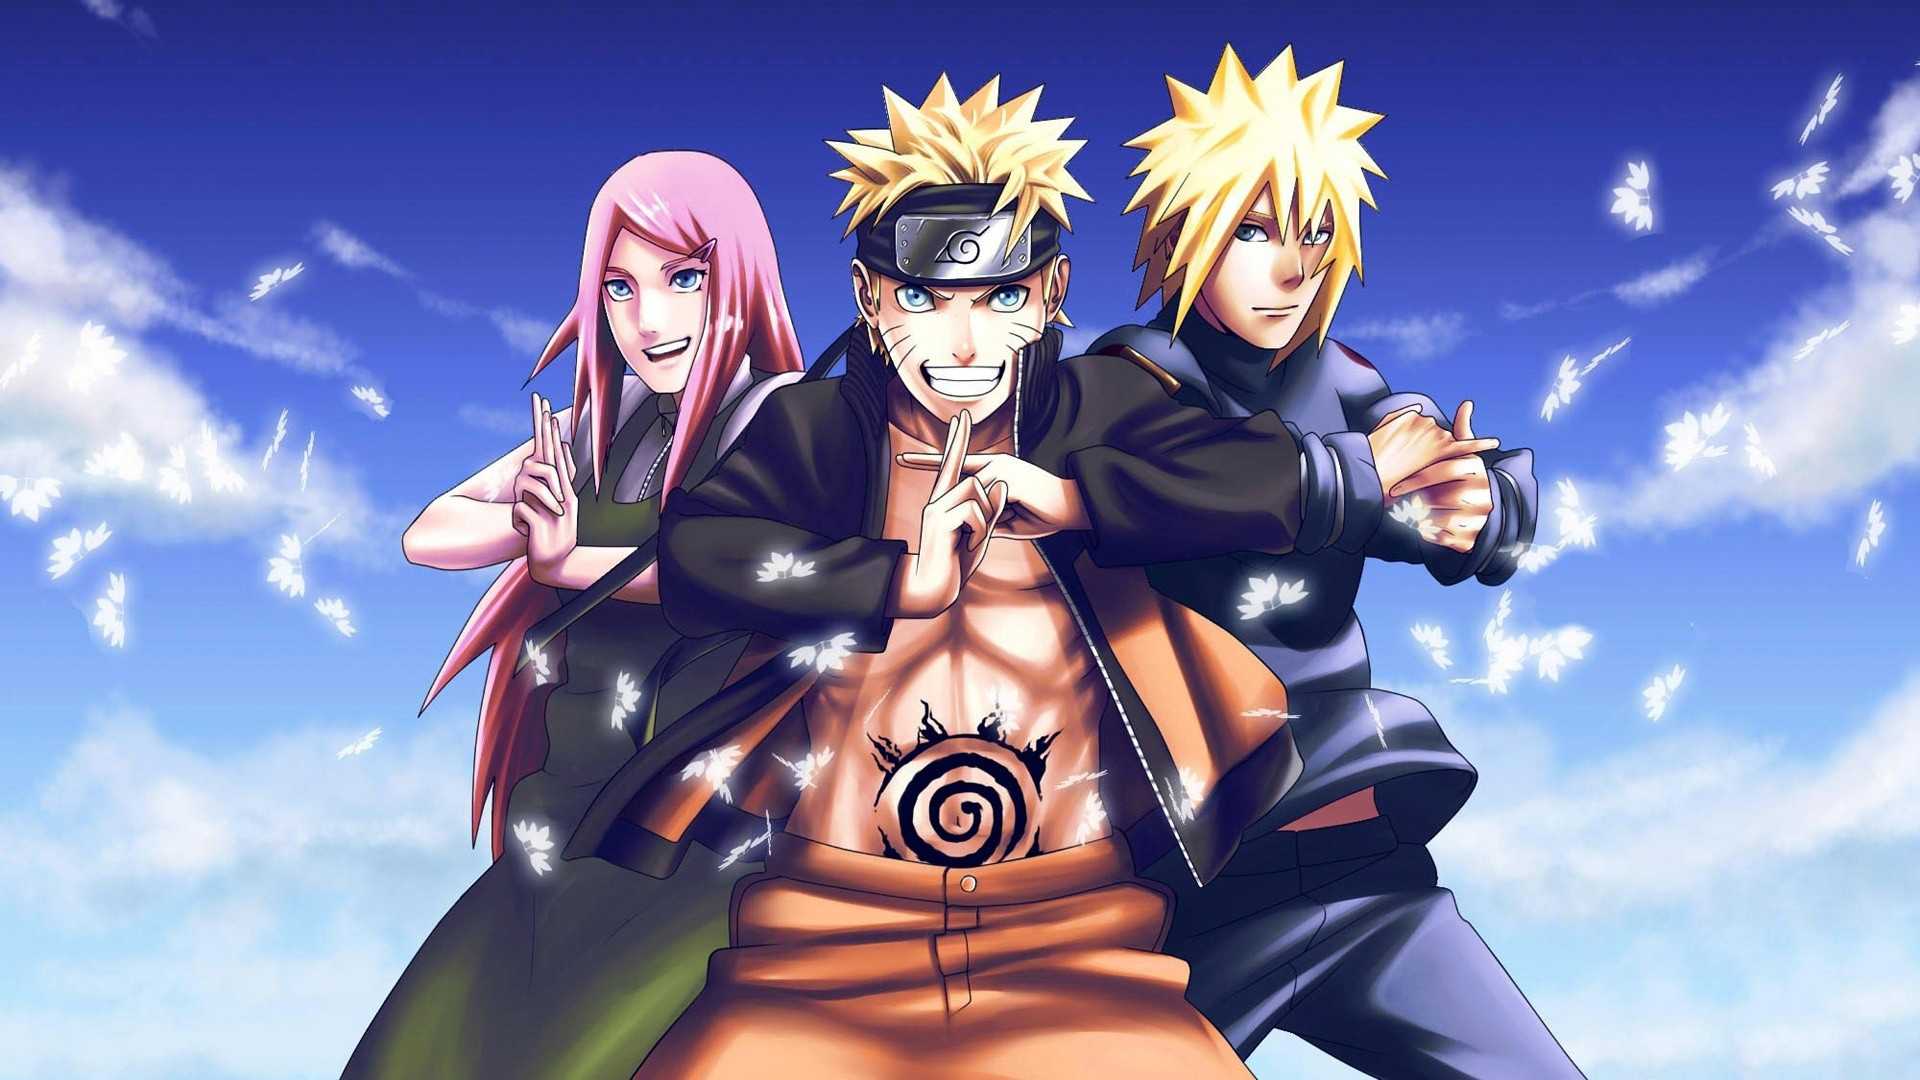 Câu chuyện của Naruto về chàng ninja trẻ tuổi và hành trình trở thành Hokage đã trở thành huyền thoại anime. Xem hình ảnh liên quan đến Naruto để bước vào thế giới giả tưởng đầy thú vị và phép thuật!